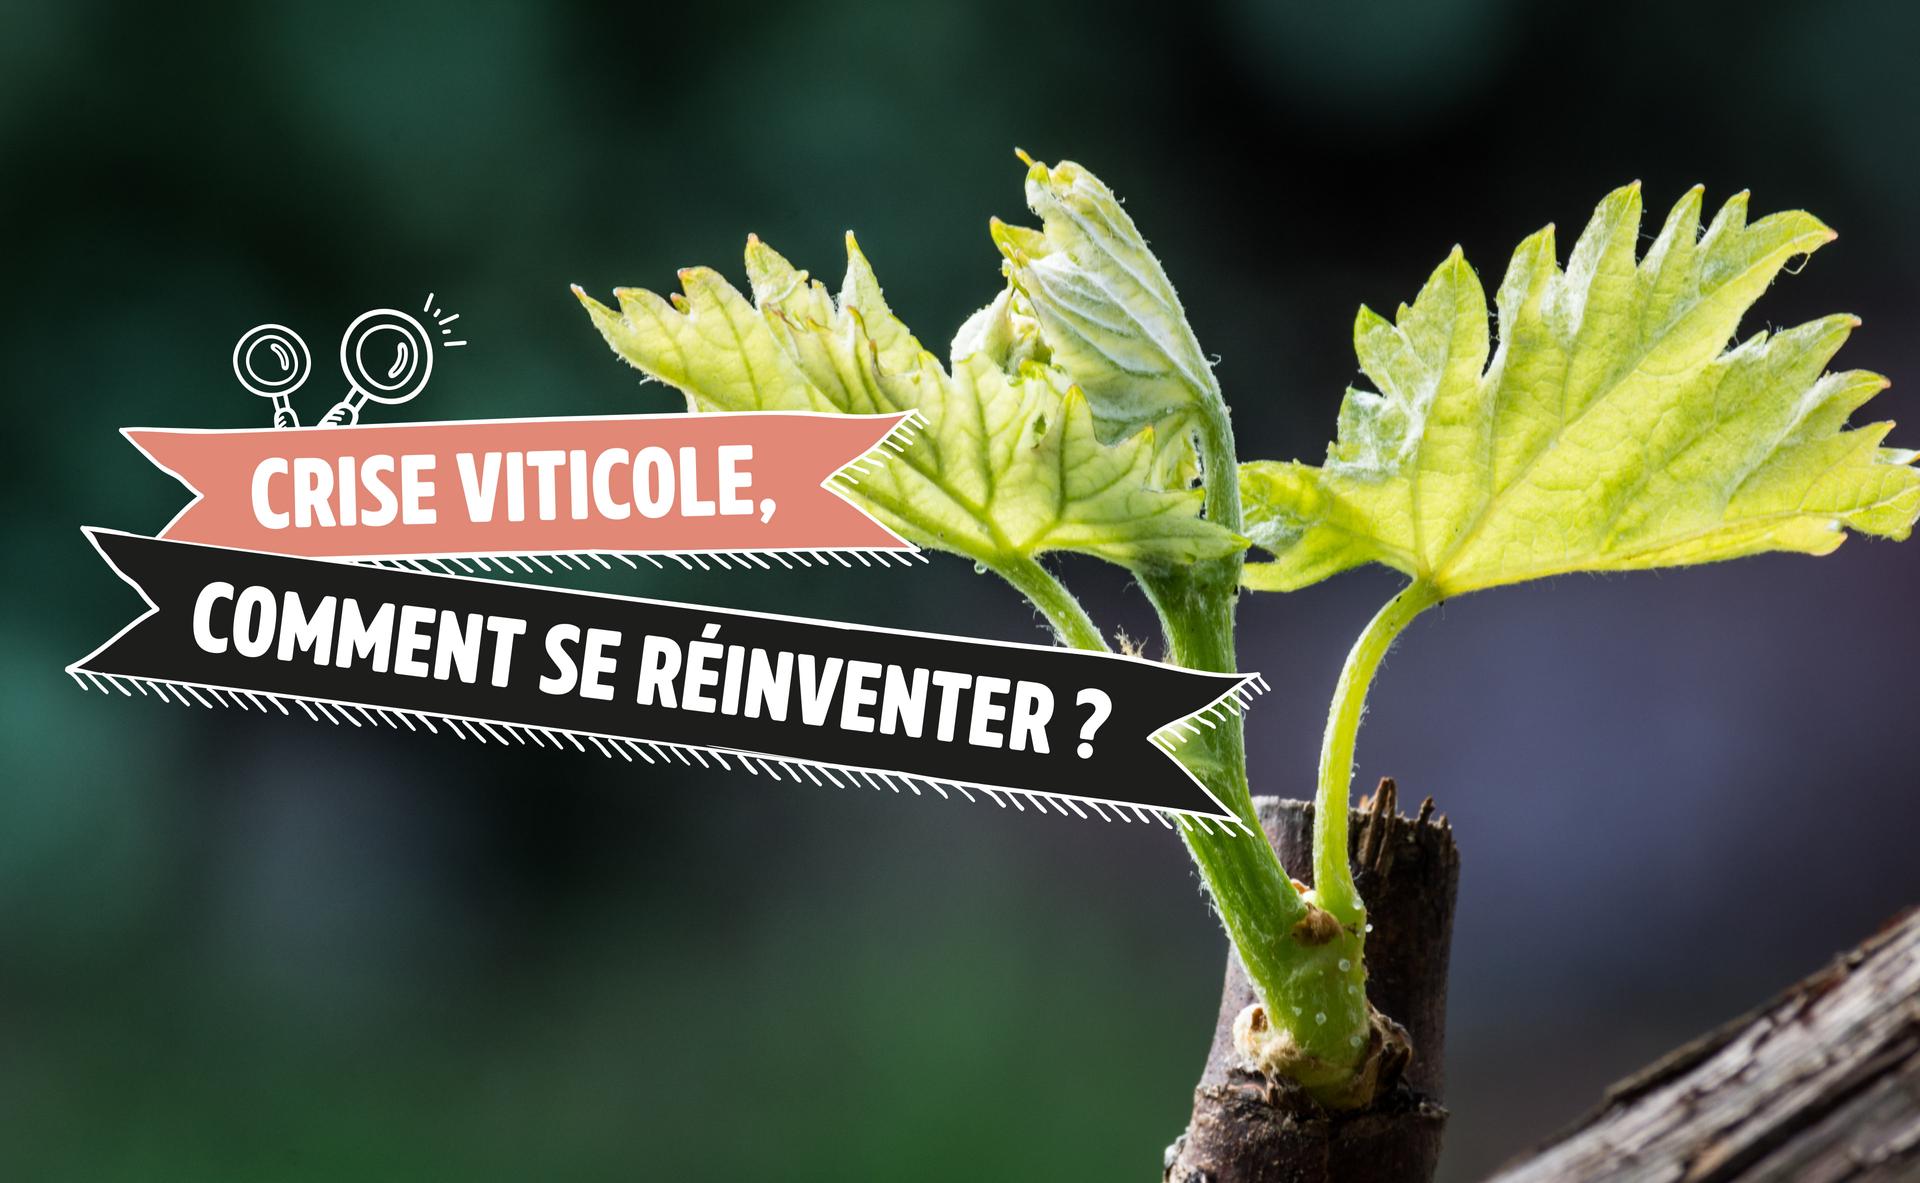 Crise viticole, comment les vigneronnes et vignerons peuvent-ils se réinventer ?